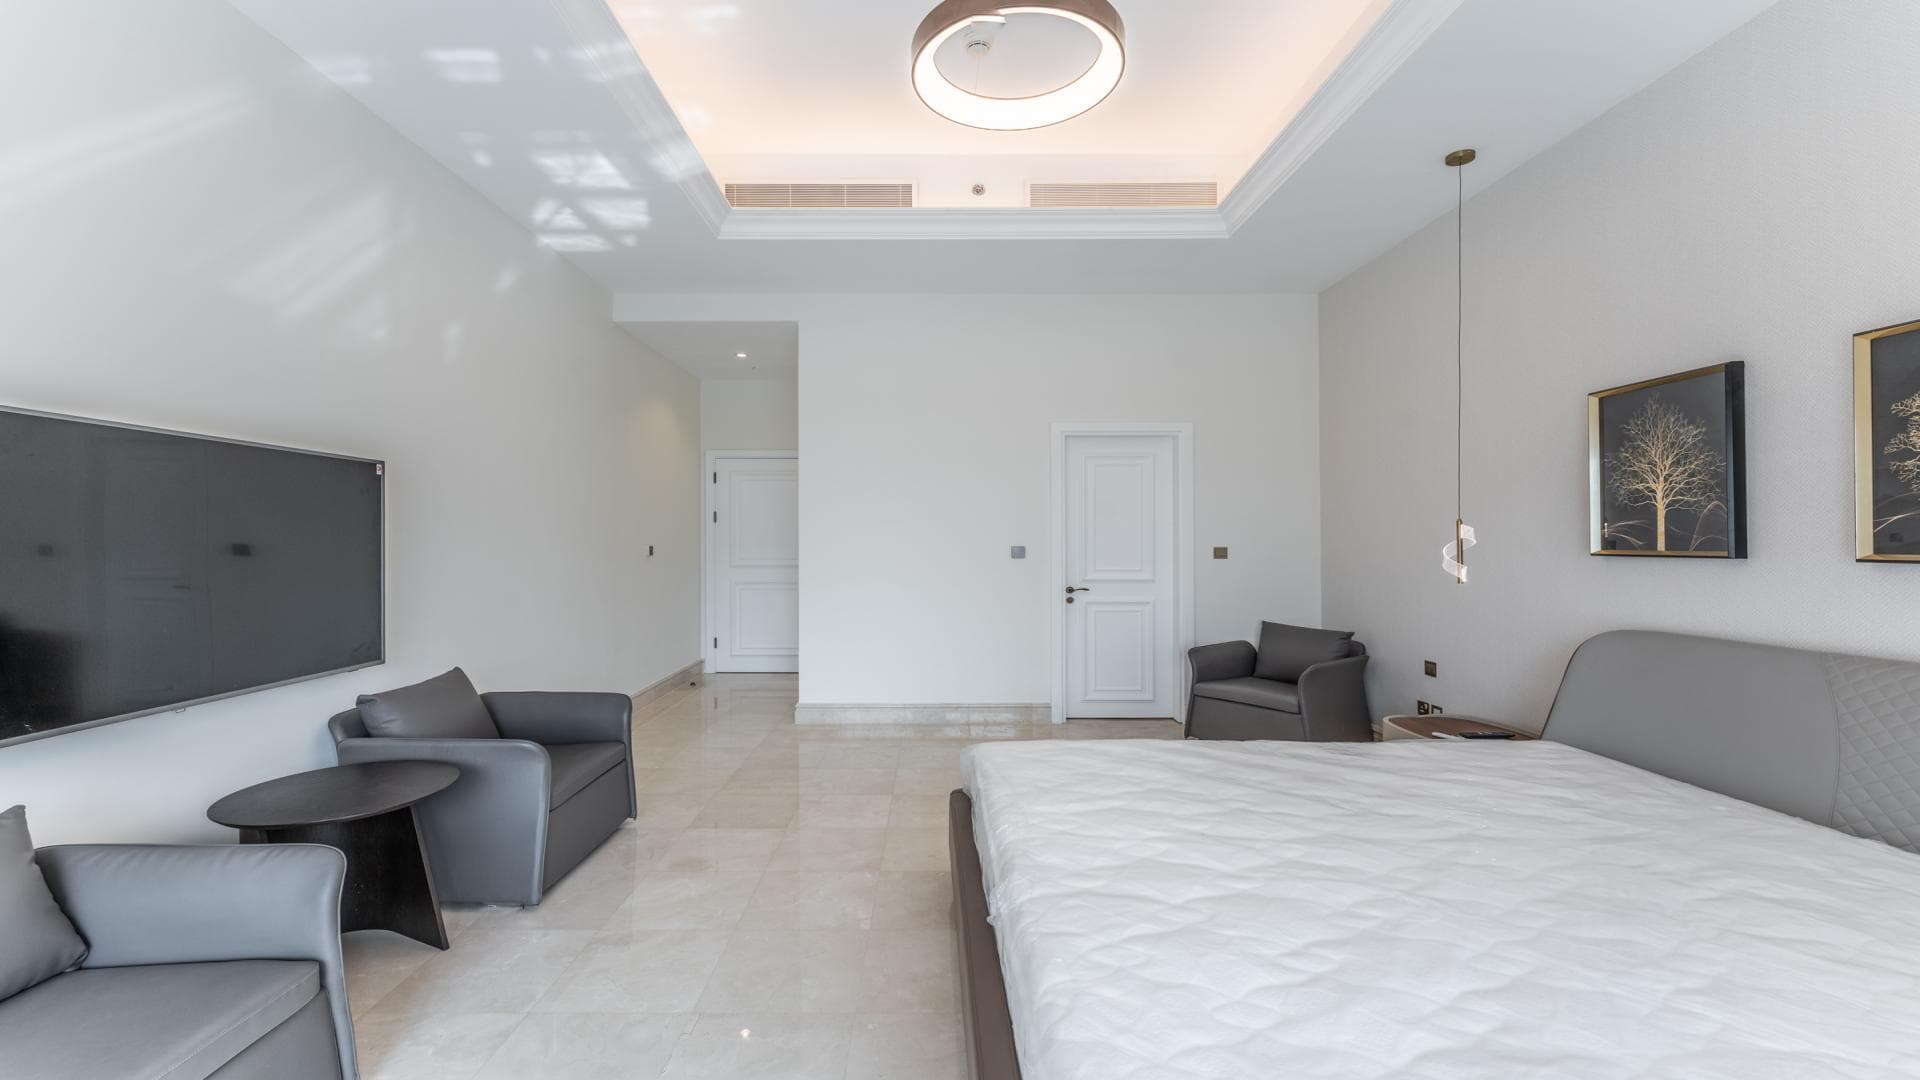 4 Bedroom Apartment For Rent Al Ramth 33 Lp20801 1b074c1dbf4e9d00.jpg